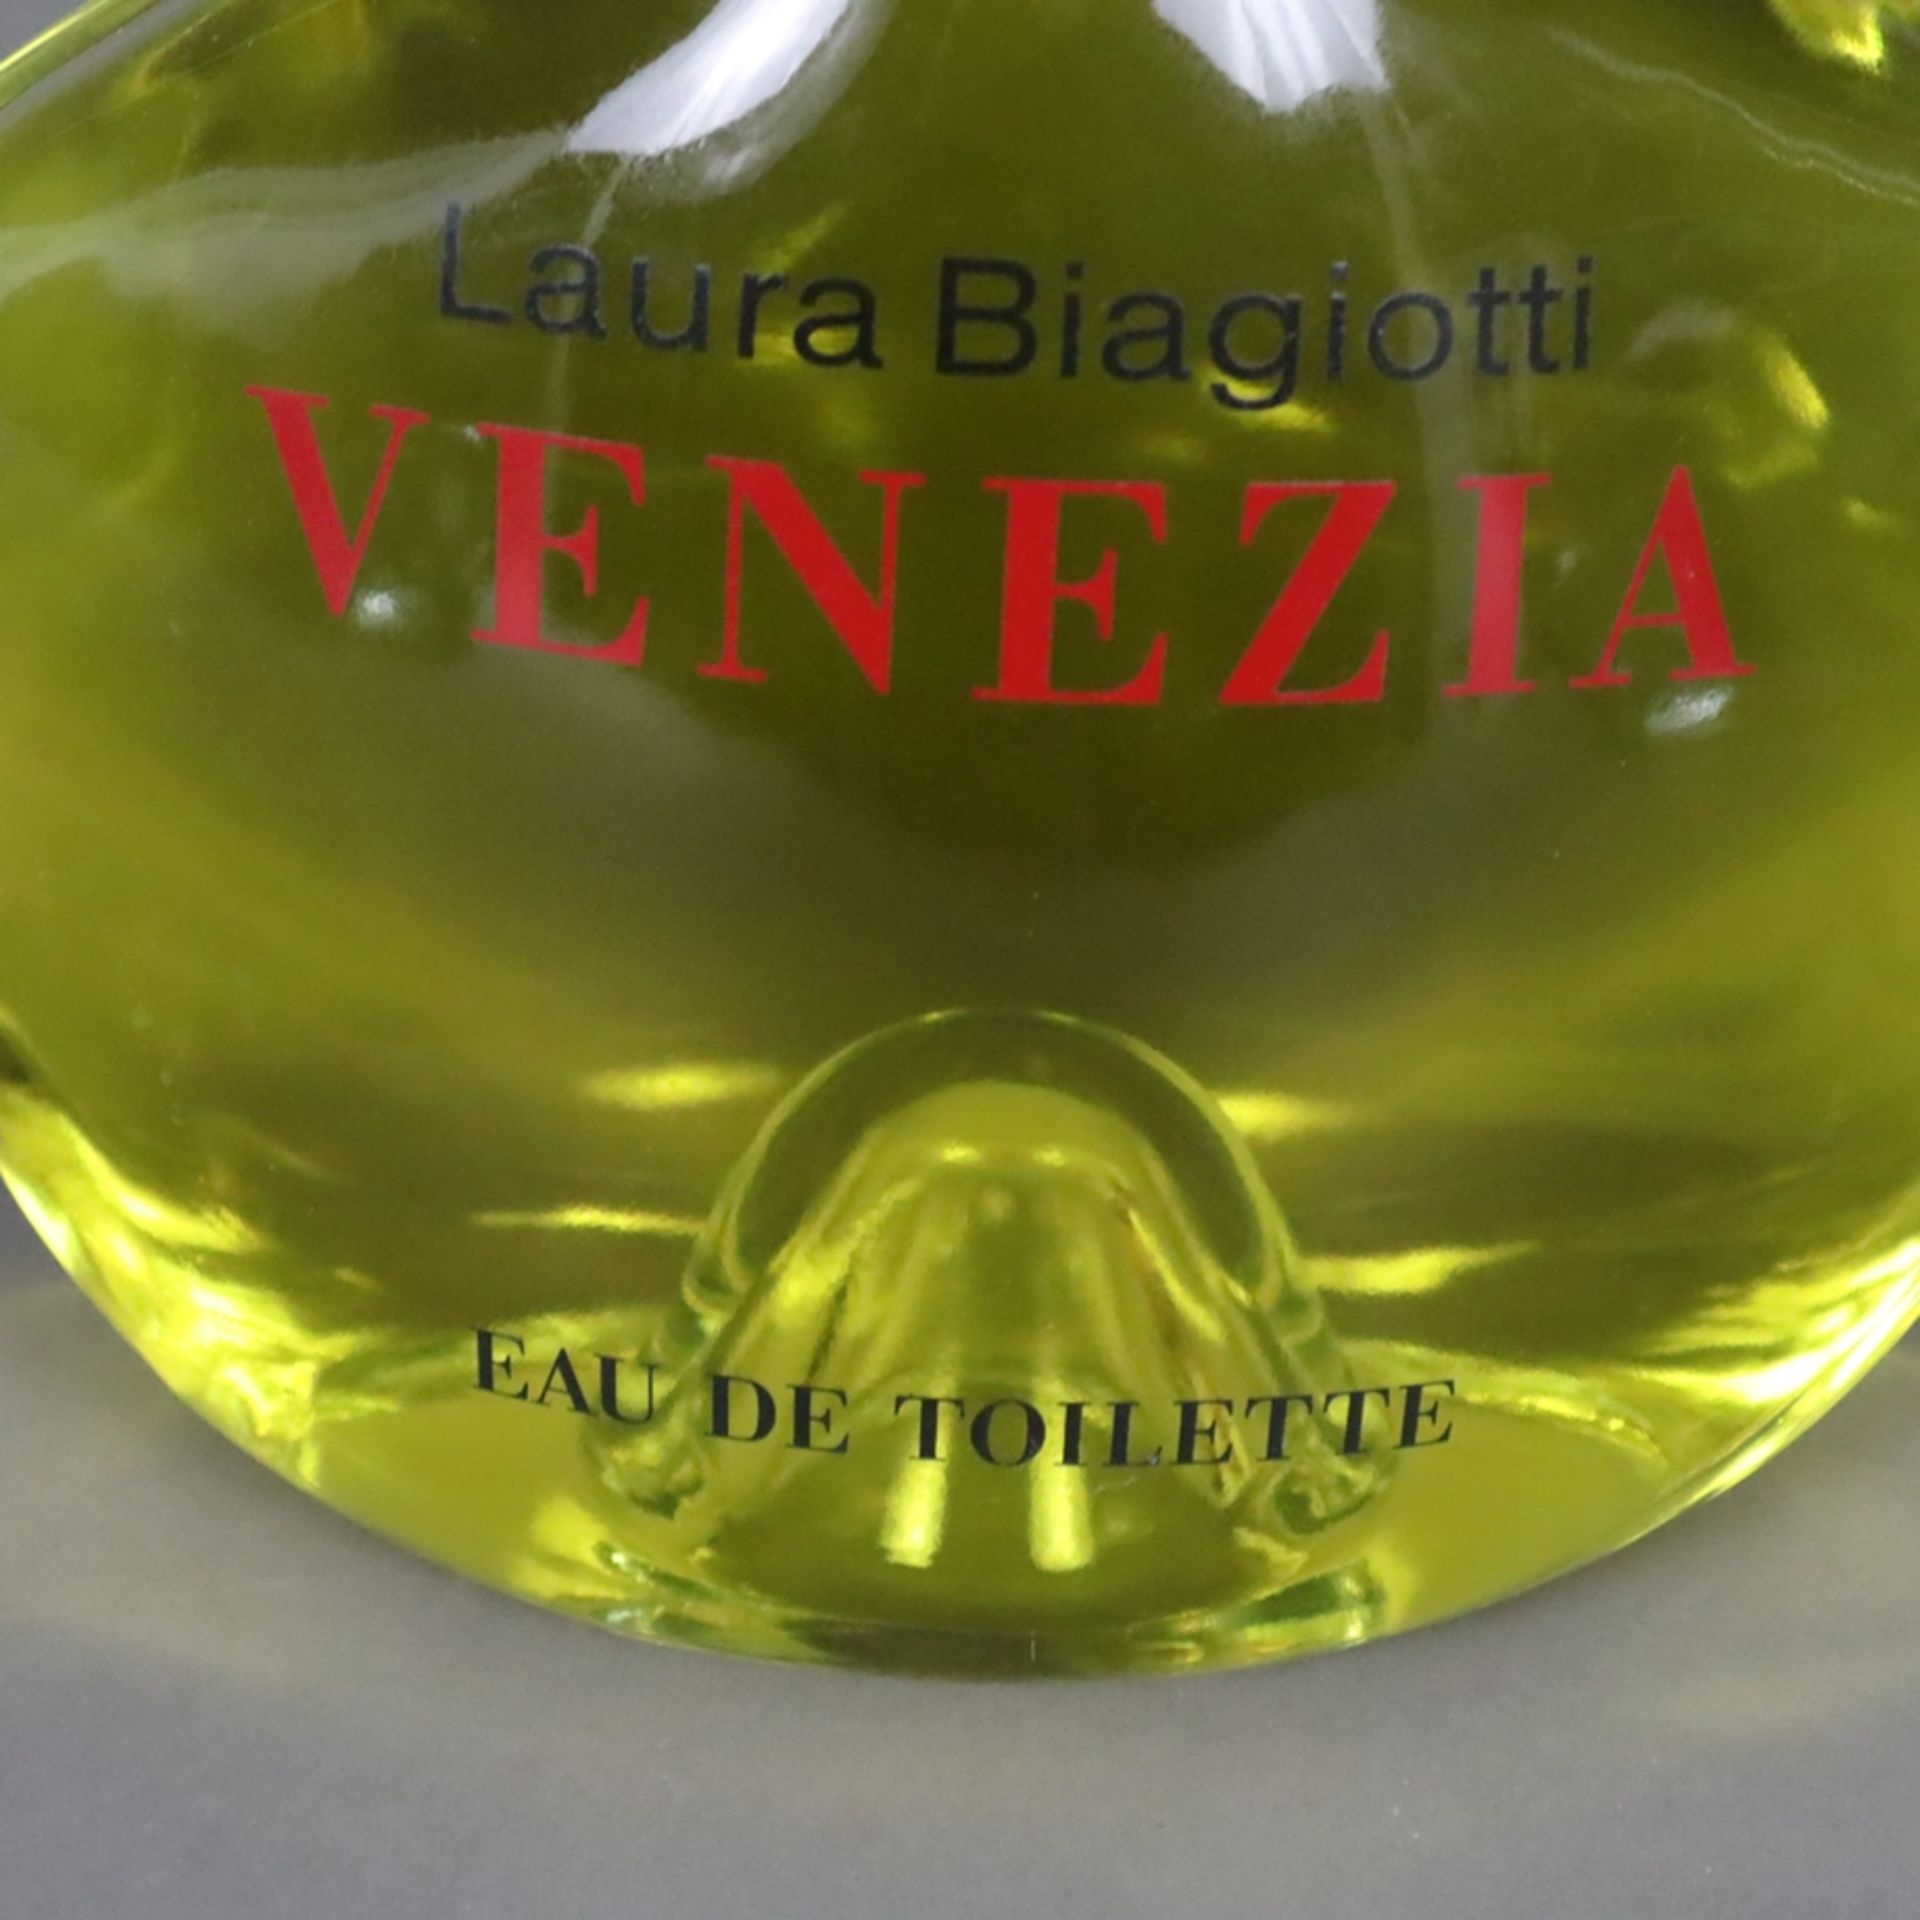 Factice "Venezia" Laura Biagiotti - Glaskorpus mit kegelförmigem Stopfen aus Kunststoff, gemarkt, b - Bild 3 aus 3